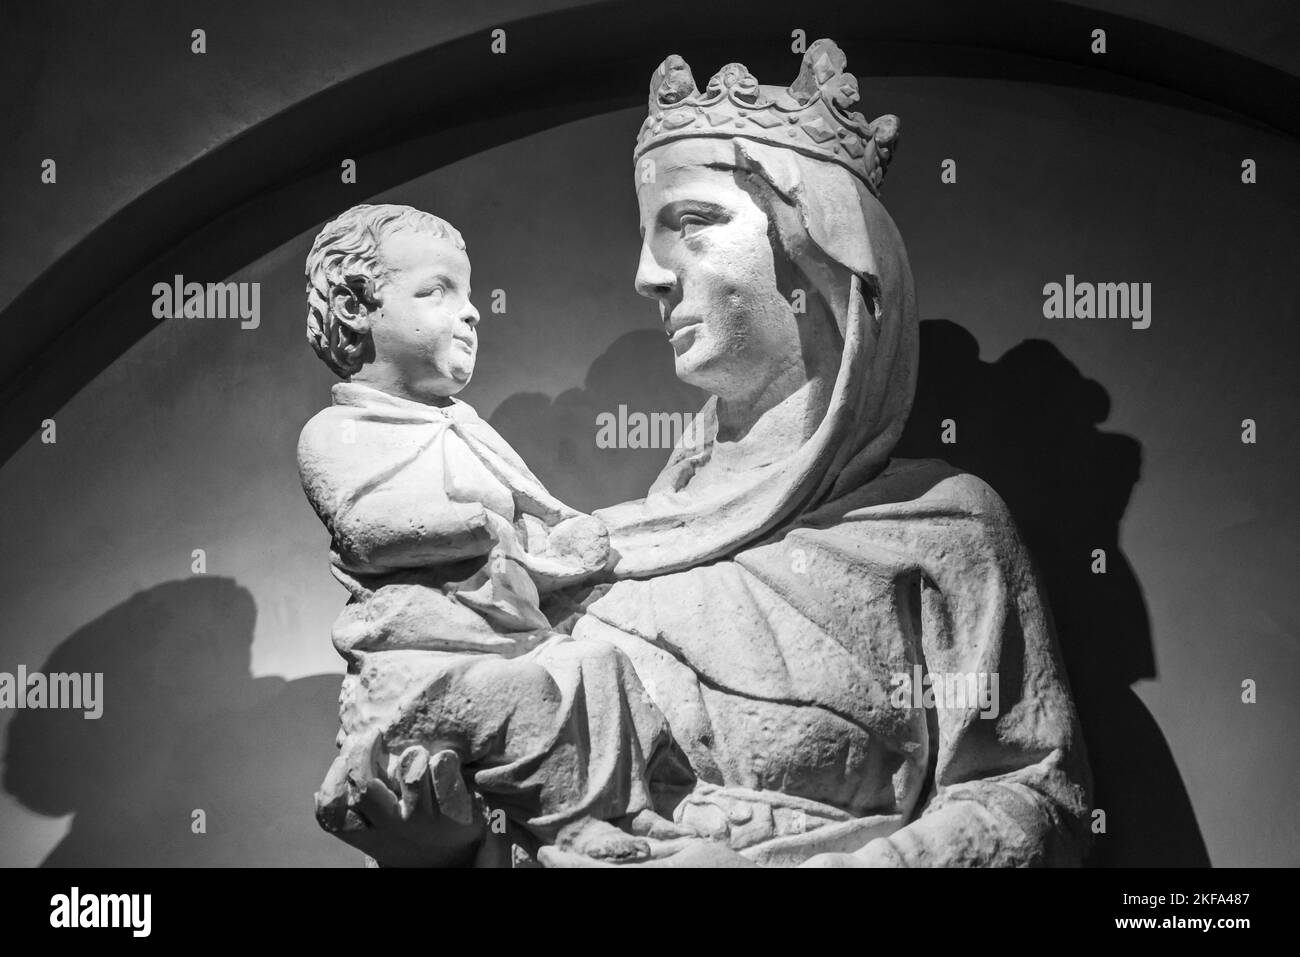 Photo noire et blanche de statues en pierre représentant une Vierge Marie couronnée tenant le bébé Jésus dans ses bras Banque D'Images